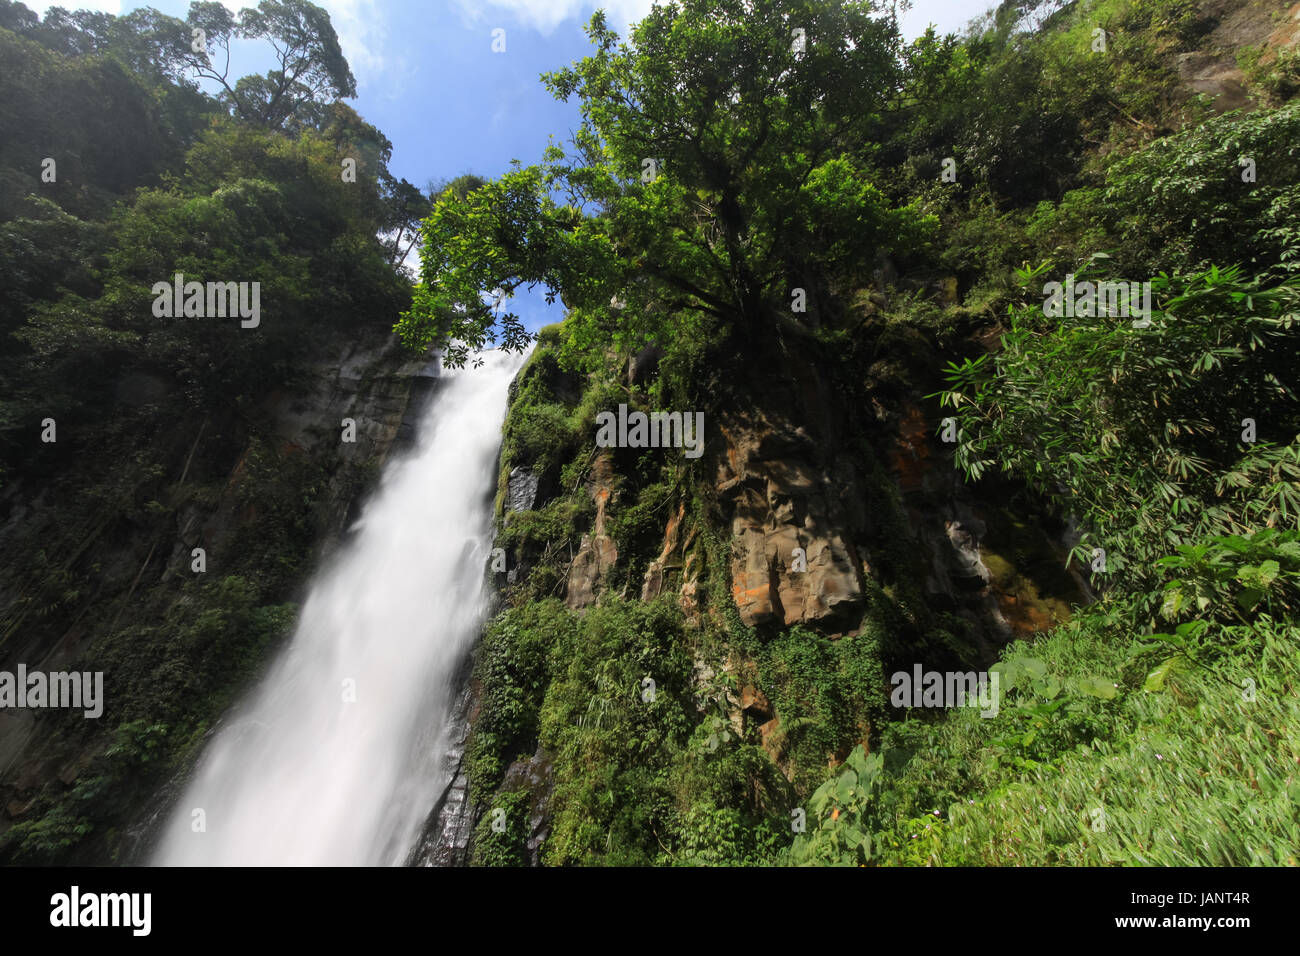 Classic cascate presso la splendida cascata Sikulikap con alberi e vegetazione tropicale crescente fuori da una scogliera rocciosa faccia nel Karo Highlands Foto Stock